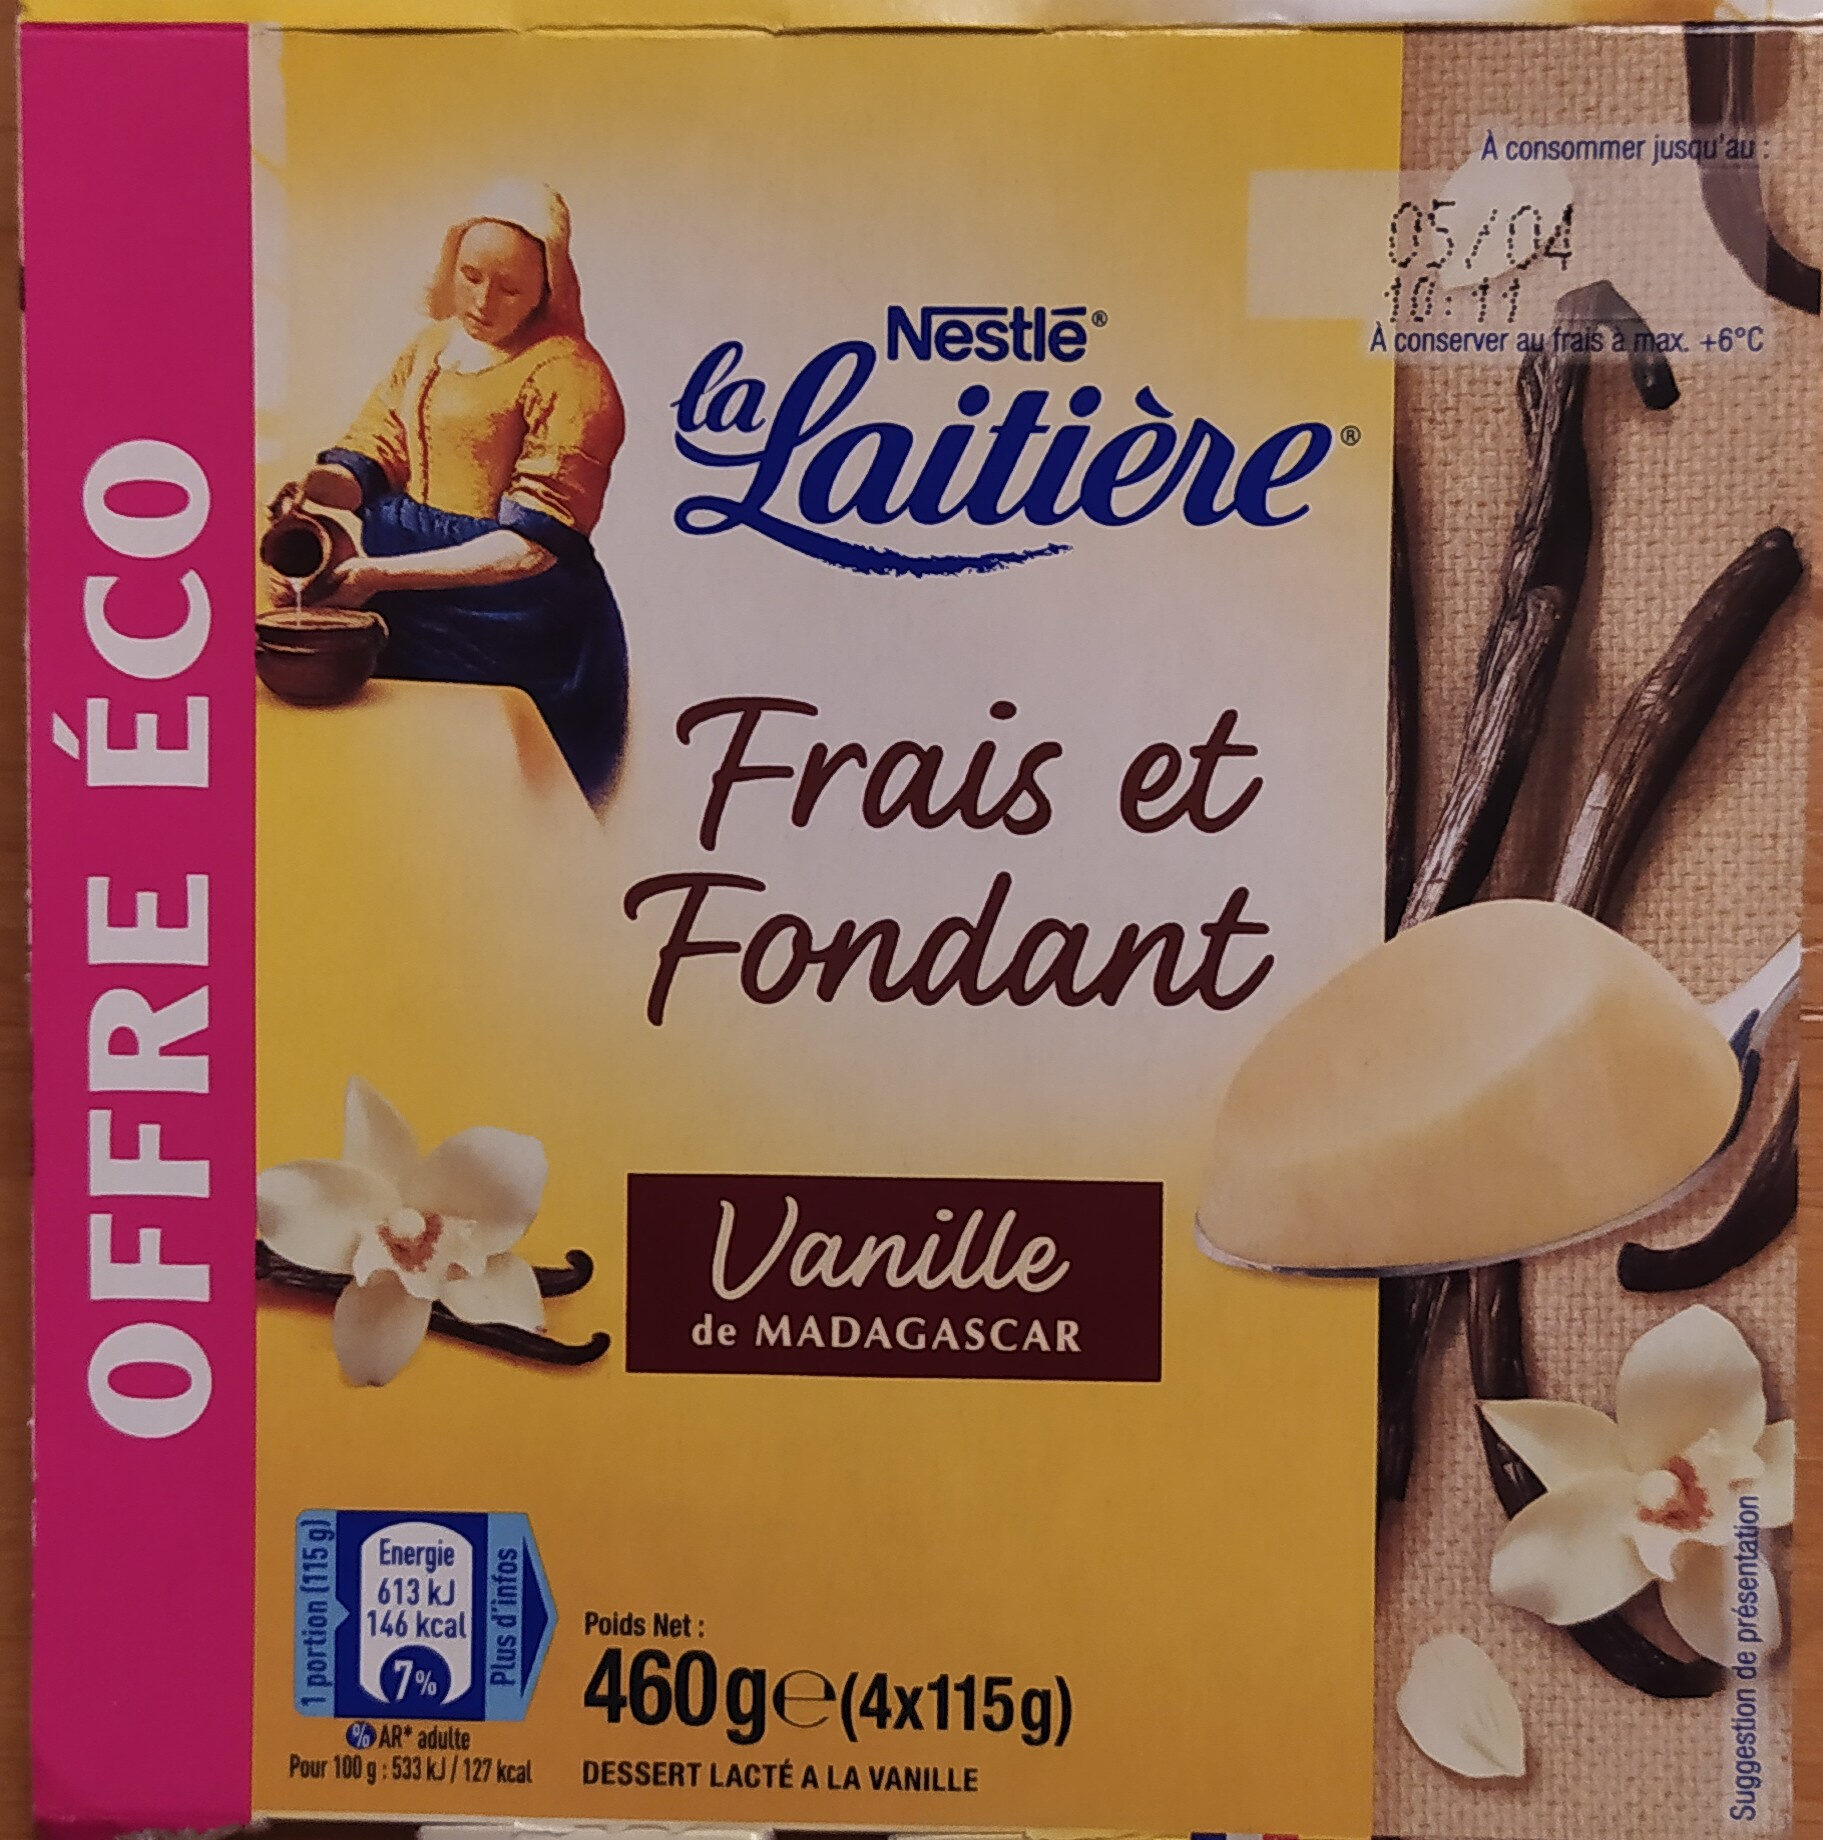 Frais et Fondant vanille de Madagascar 4 x 115 g - Produkt - fr